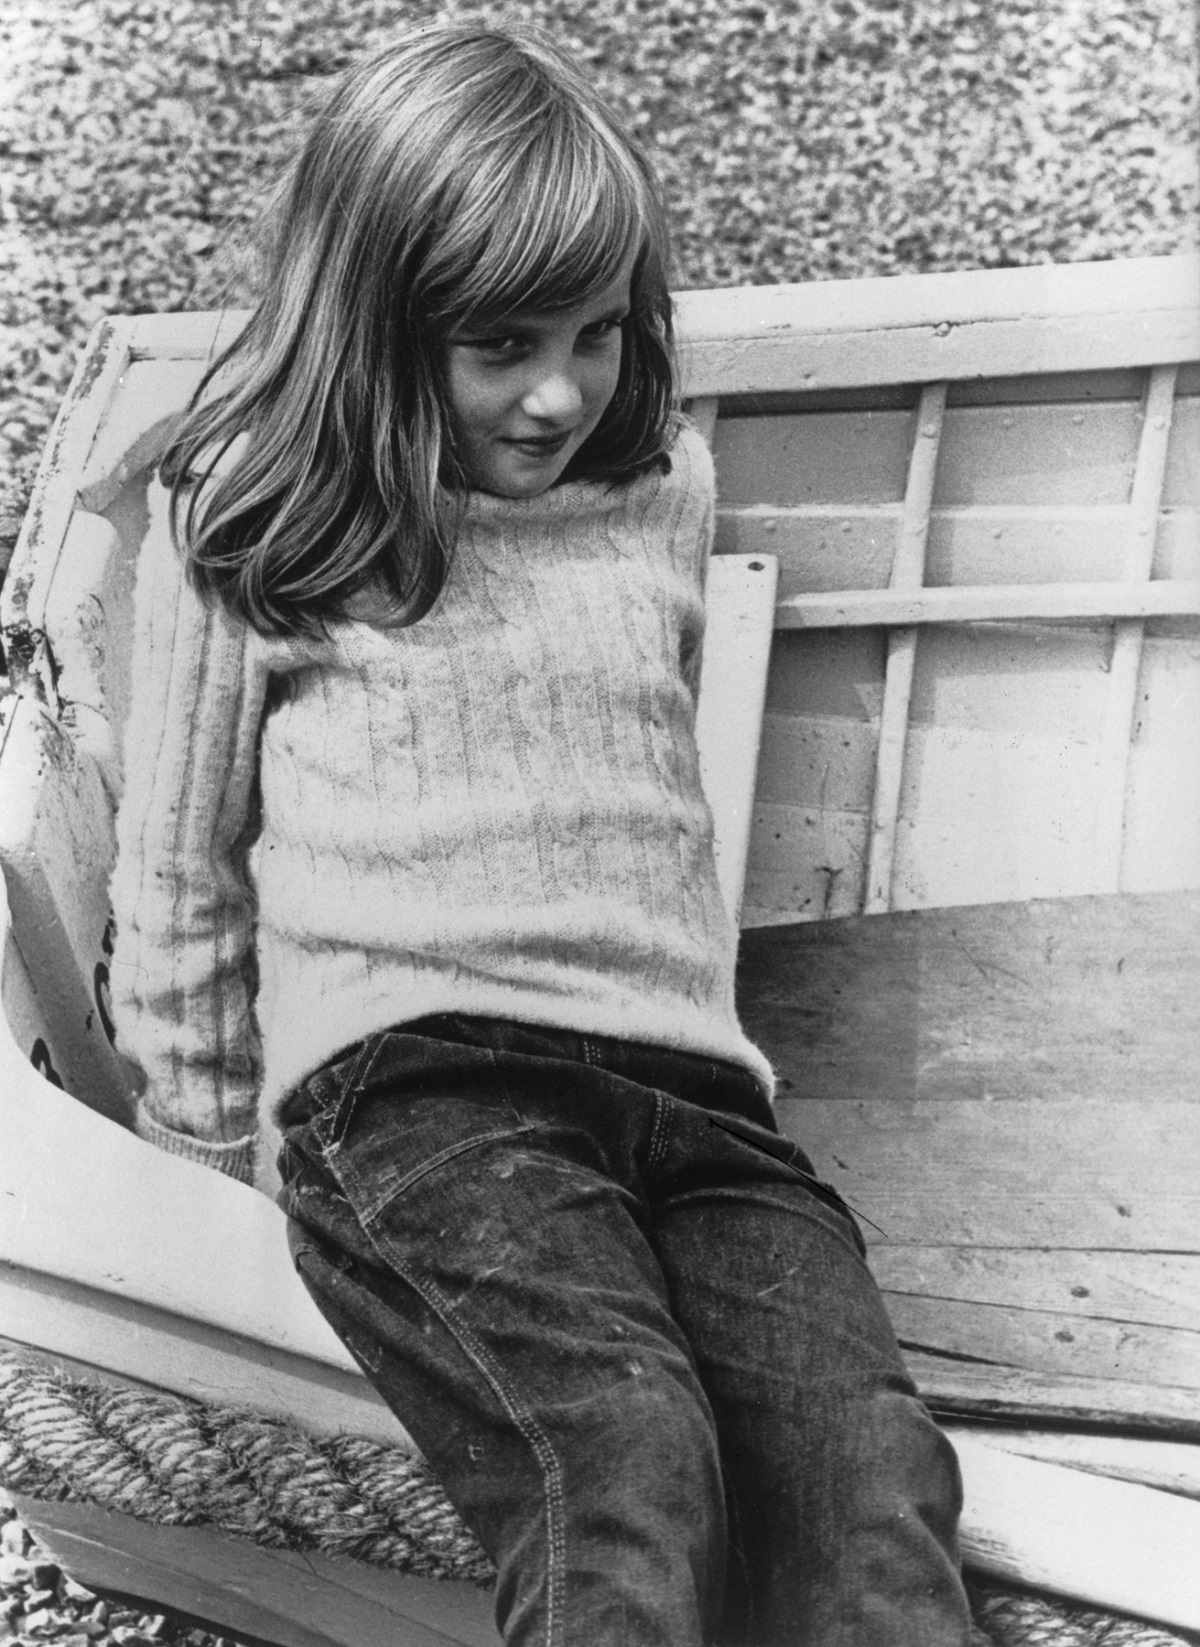 Prințesa Diana în copilărie în anul 1970 în timpul unei vacanțe de vară în timp ce stă pe o lădiță